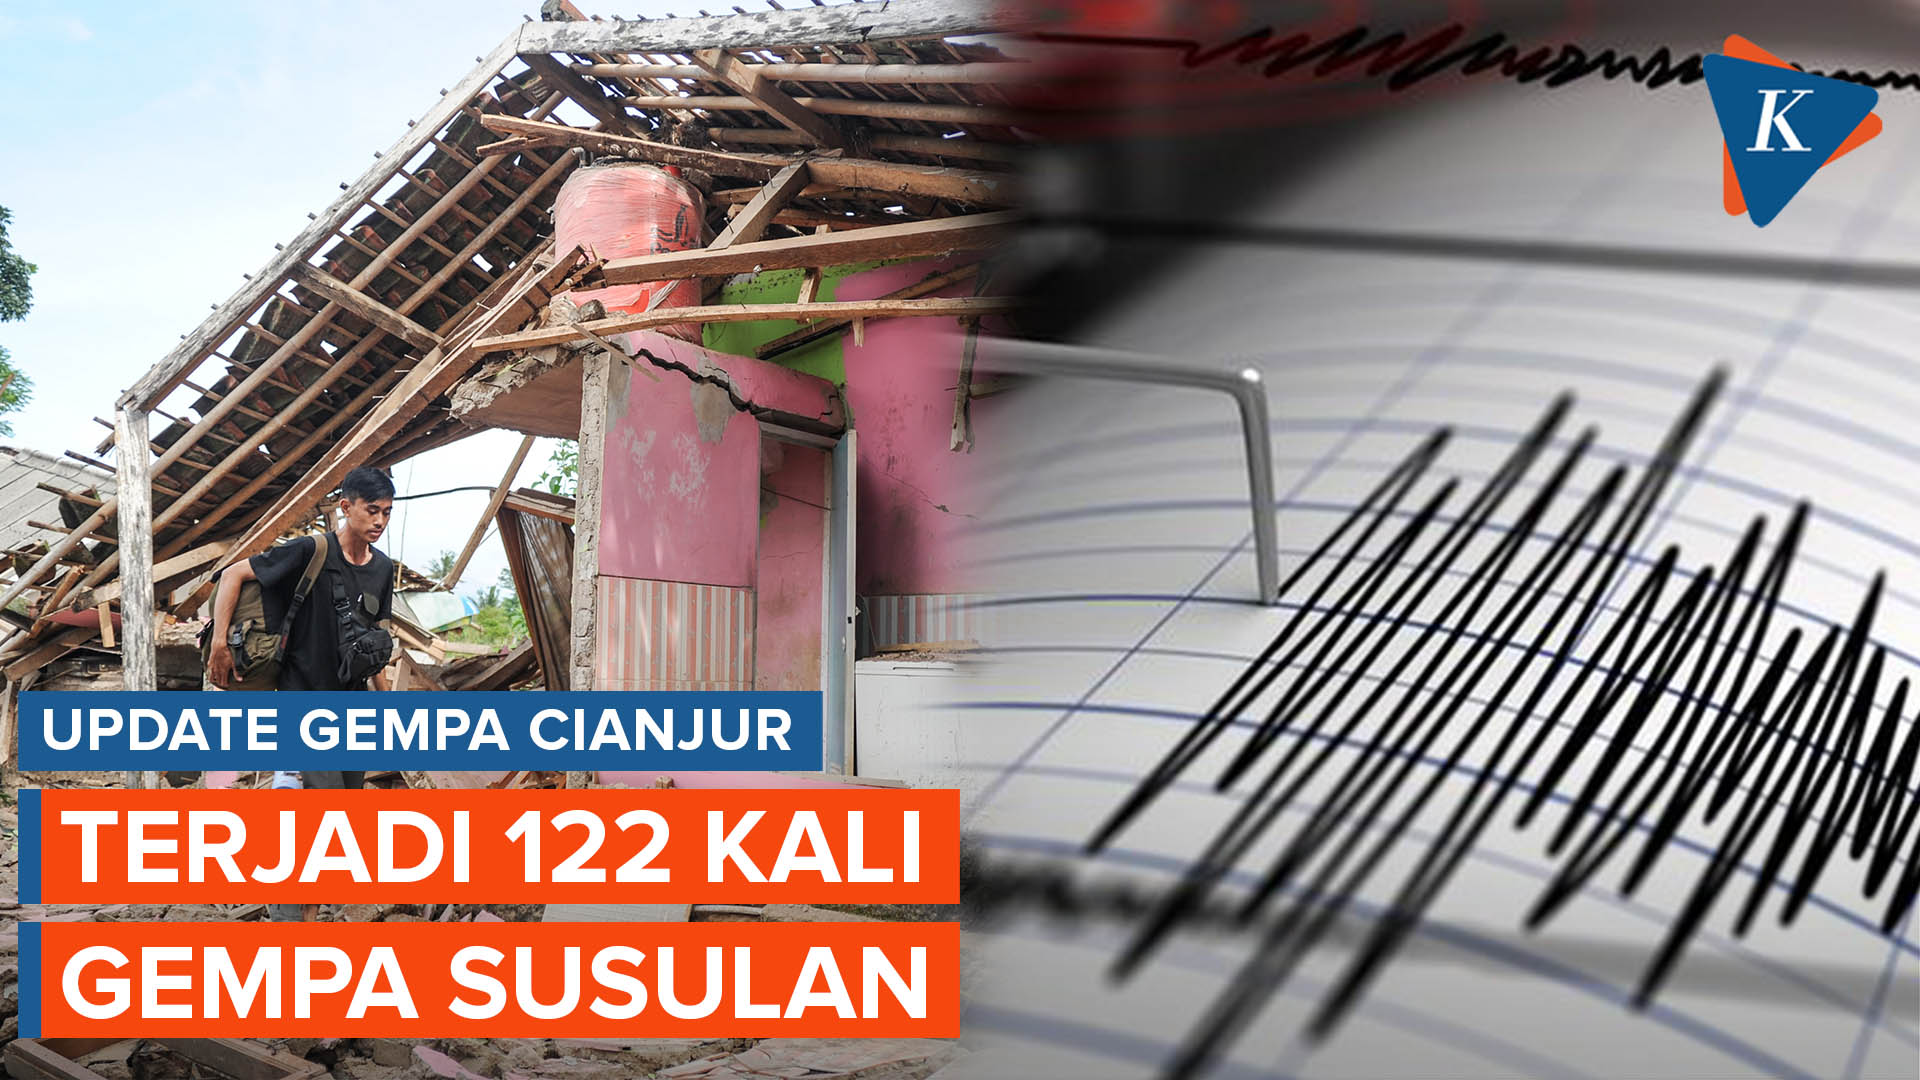 BMKG Catat 122 Gempa Susulan di Cianjur hingga Selasa Pagi